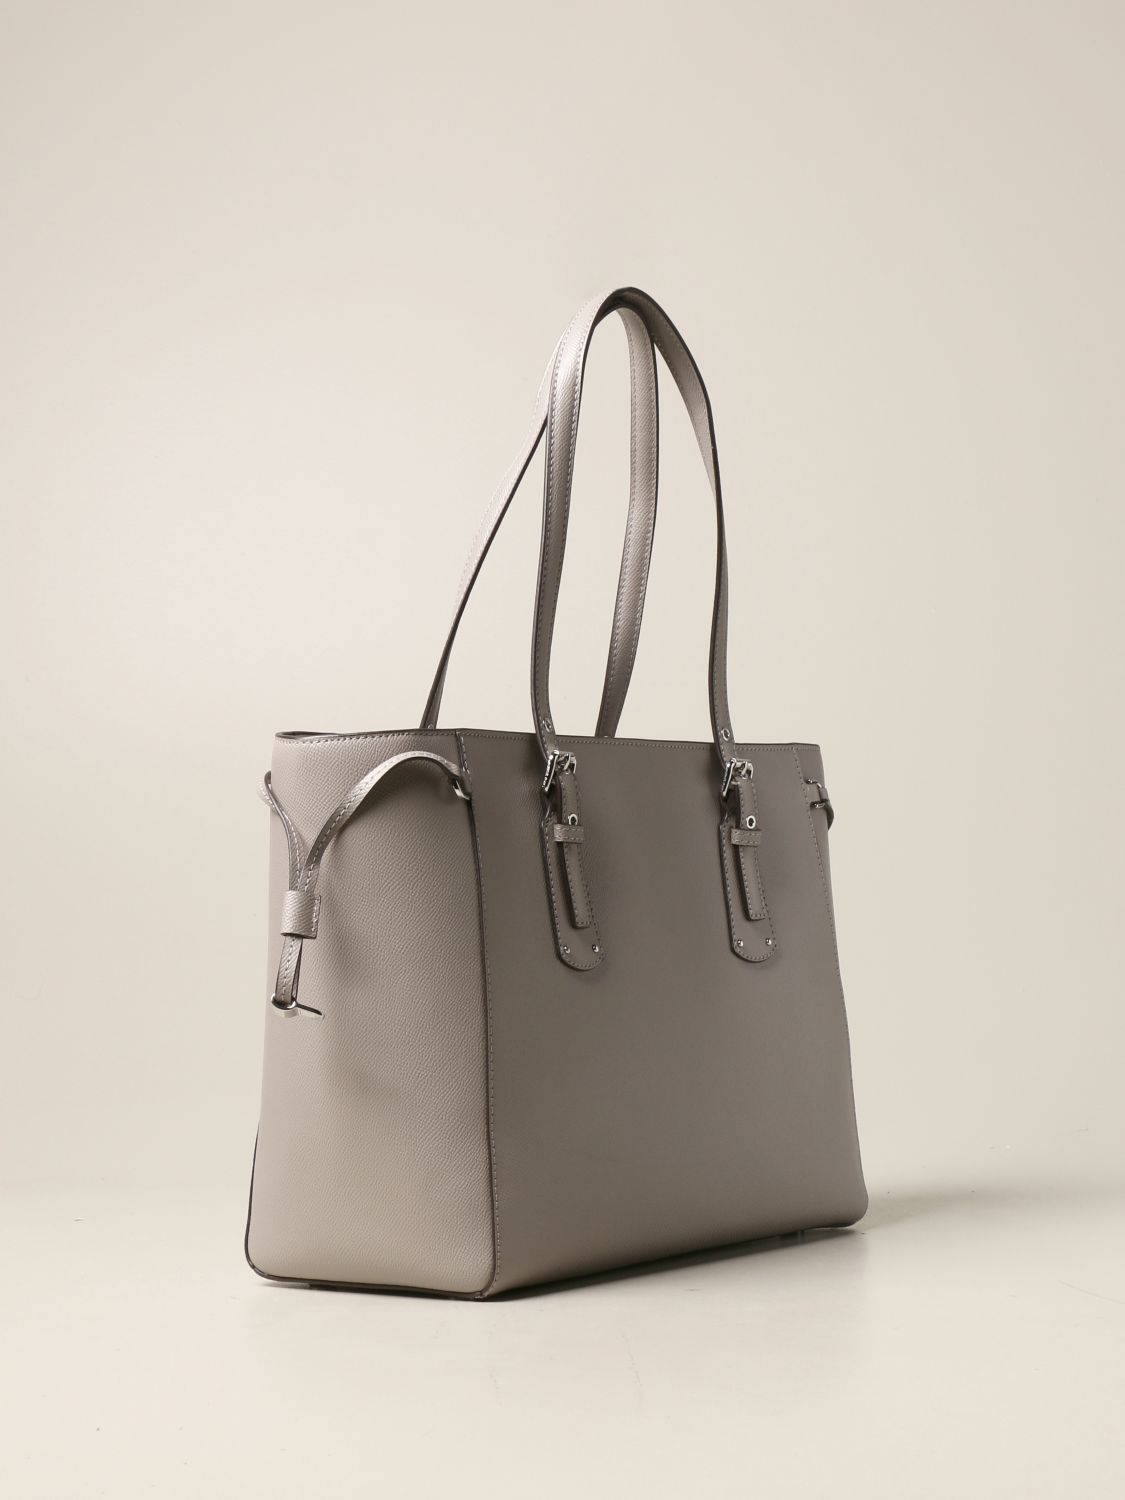 MICHAEL KORS: tote bags for women - Grey | Michael Kors tote bags ...